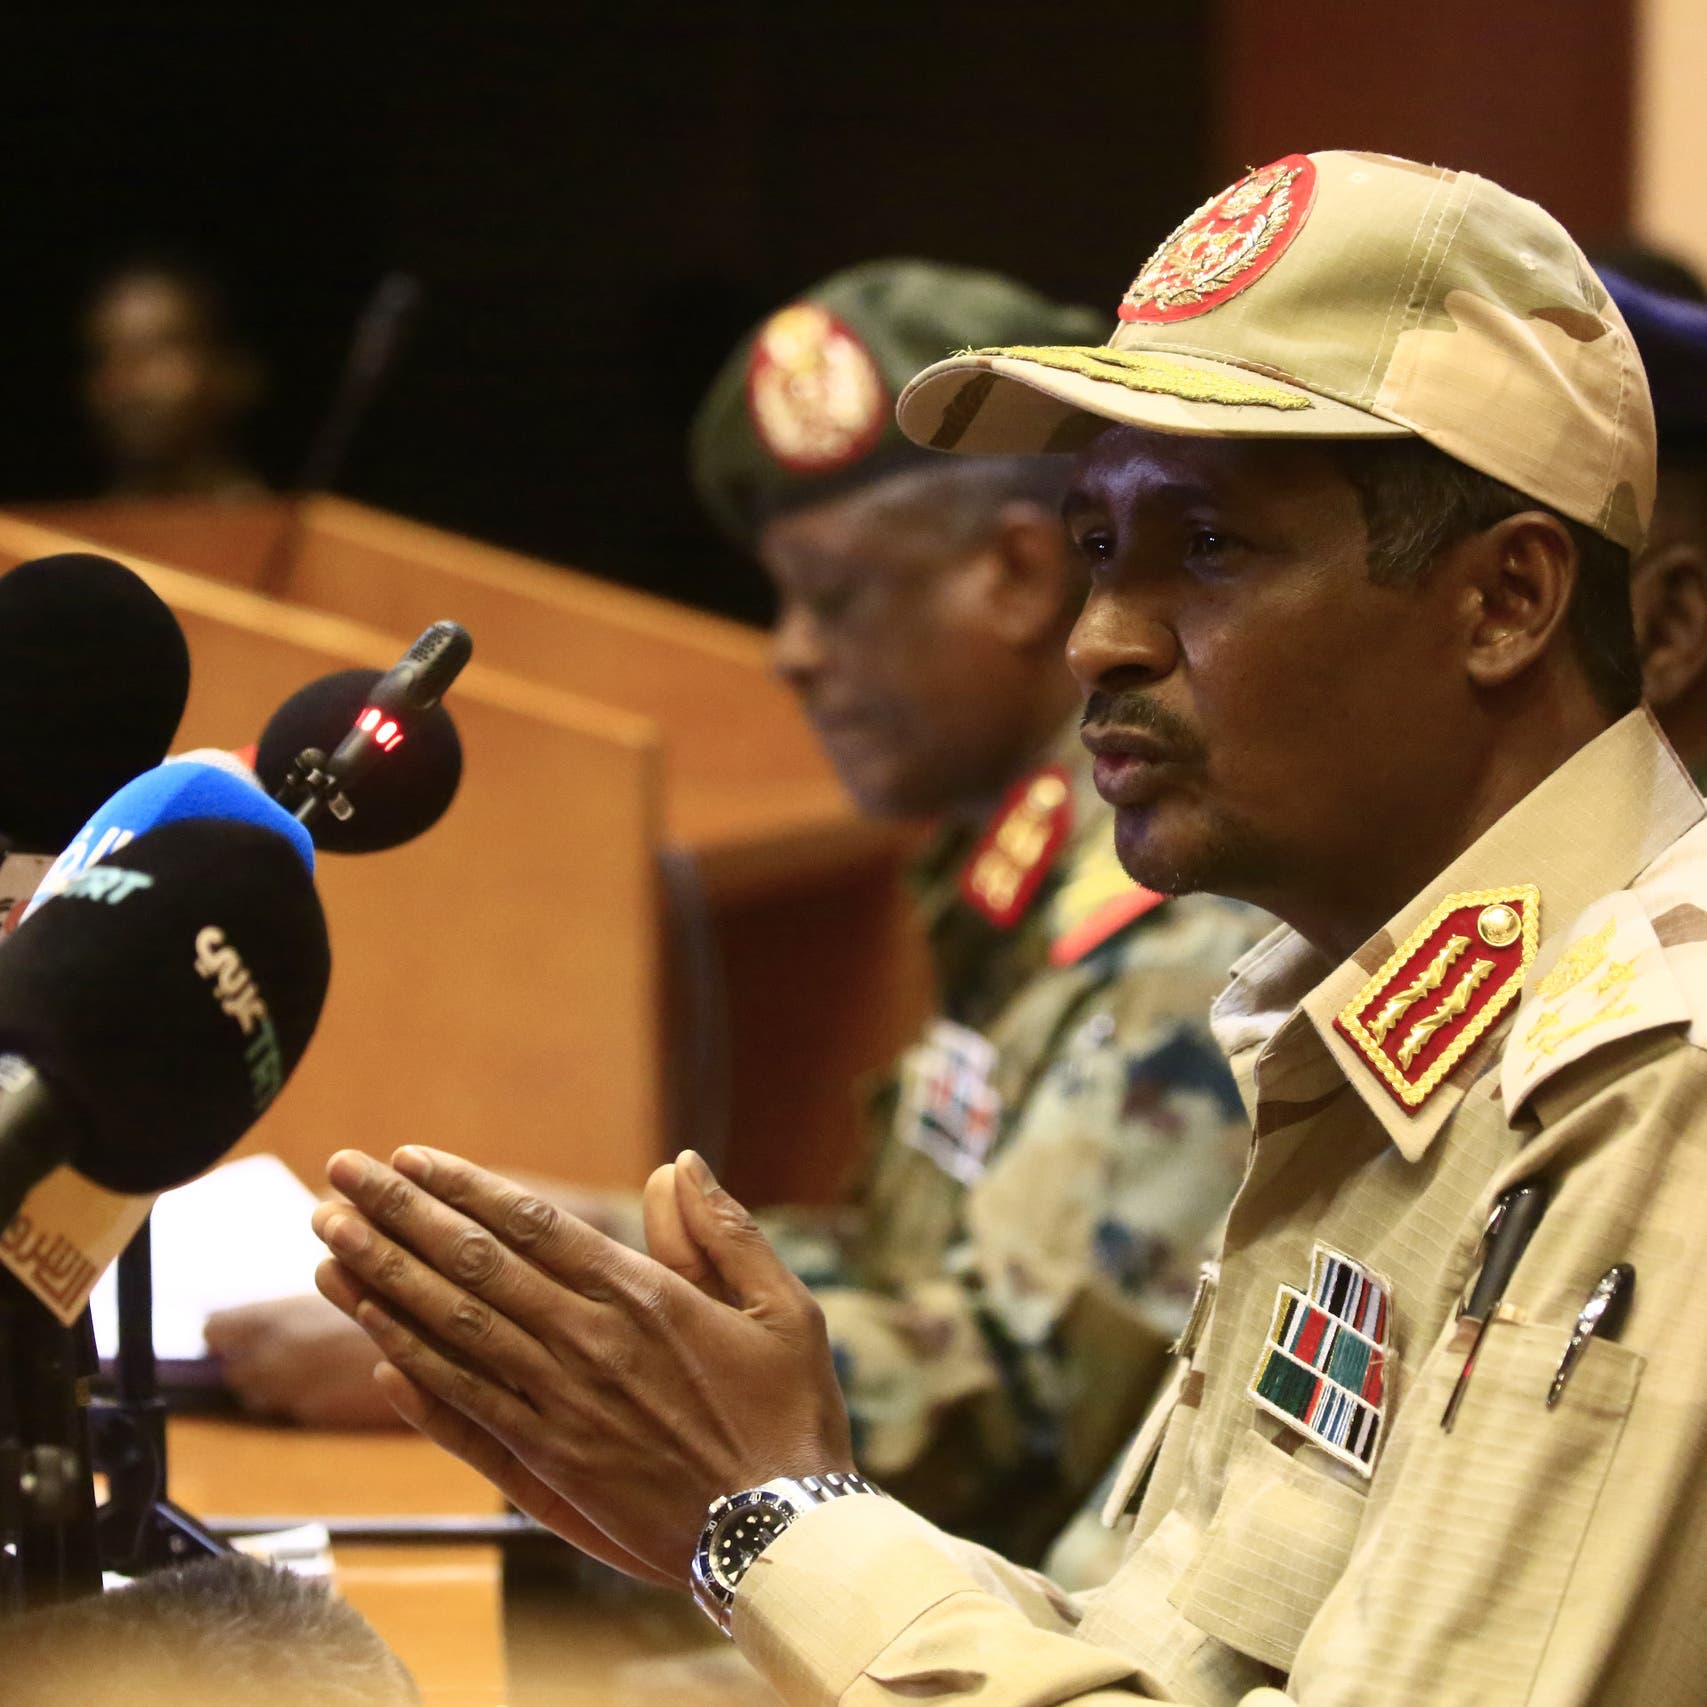 دقلو: الترويج بأن العسكر في السودان وراء الانقلاب نفاق